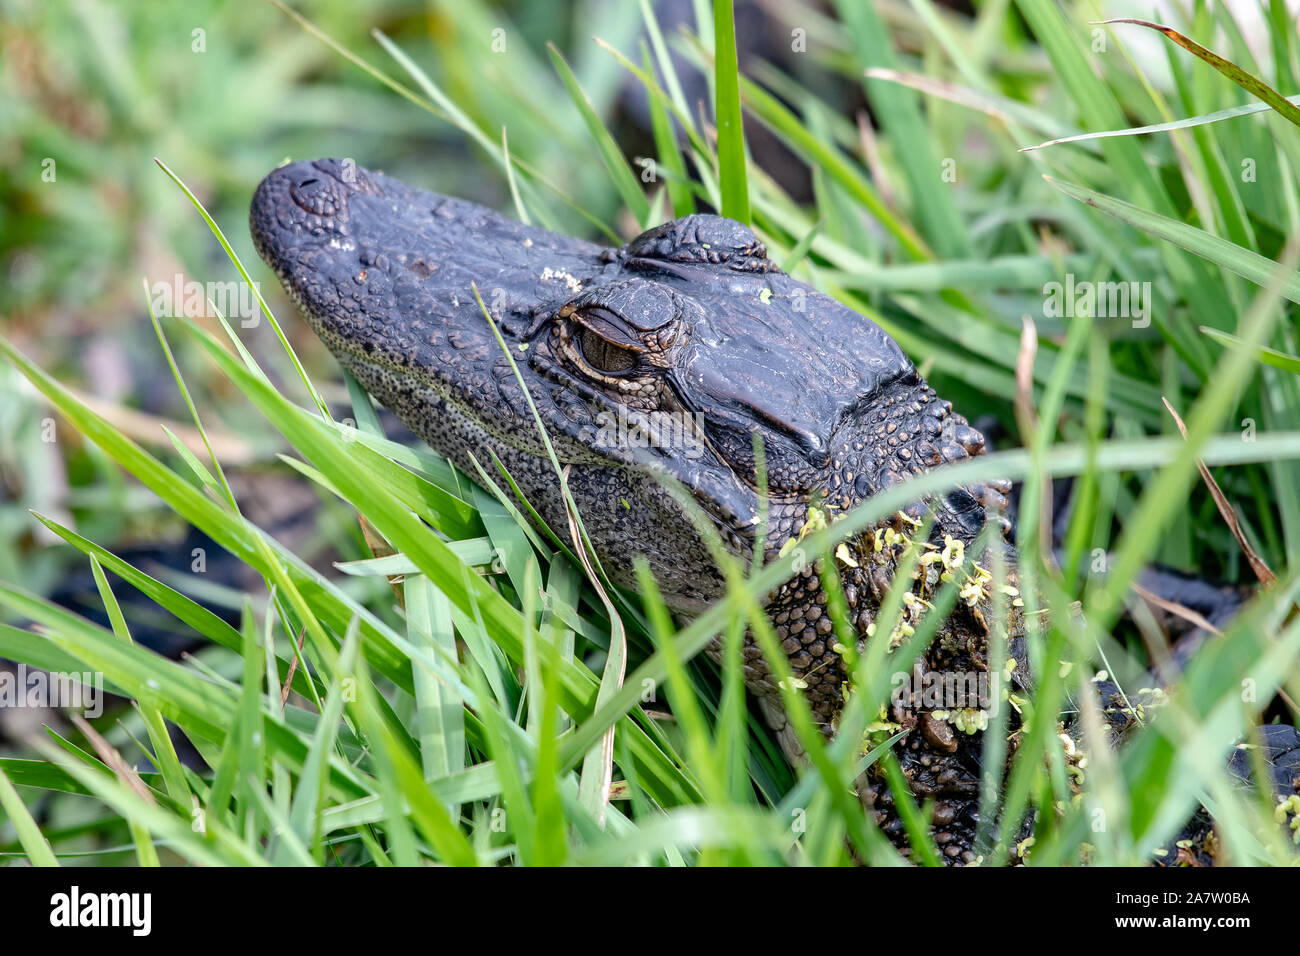 Baby American alligator versteckt am Rande eines Sees in Florida Stockfoto